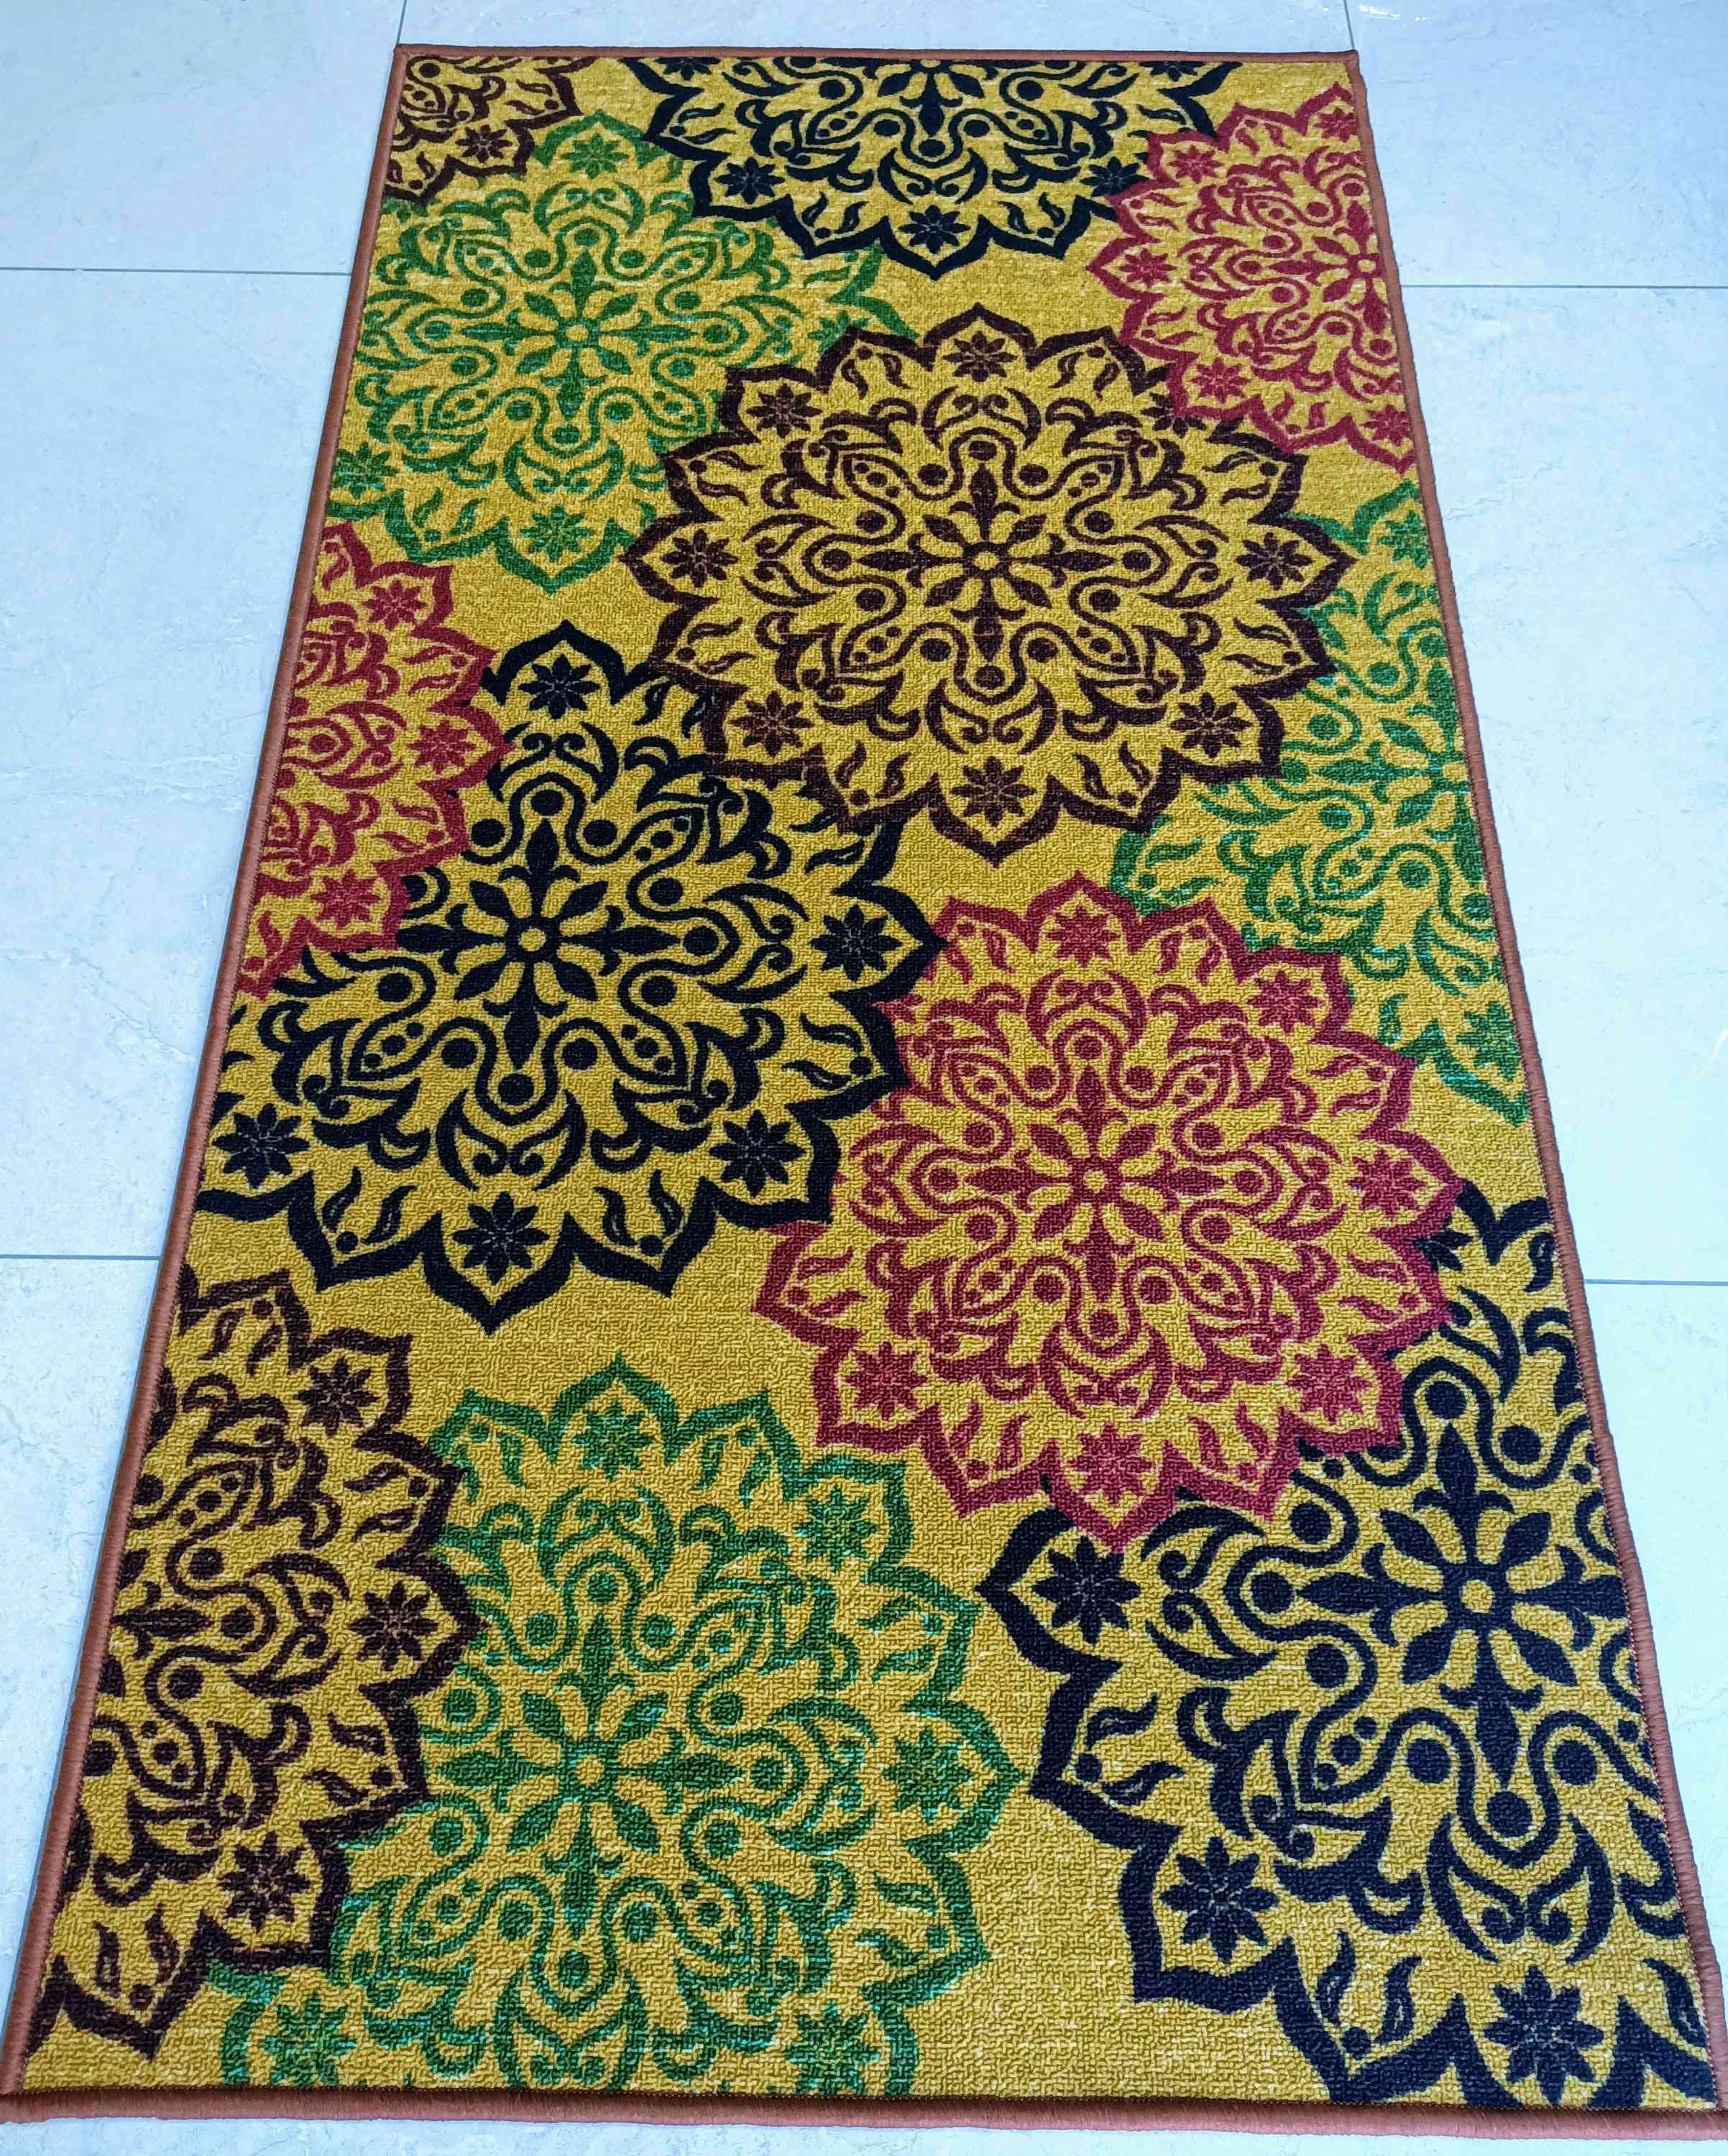 Estilo de decoración dorada, poliéster, alfombra / corredores pequeños antideslizantes